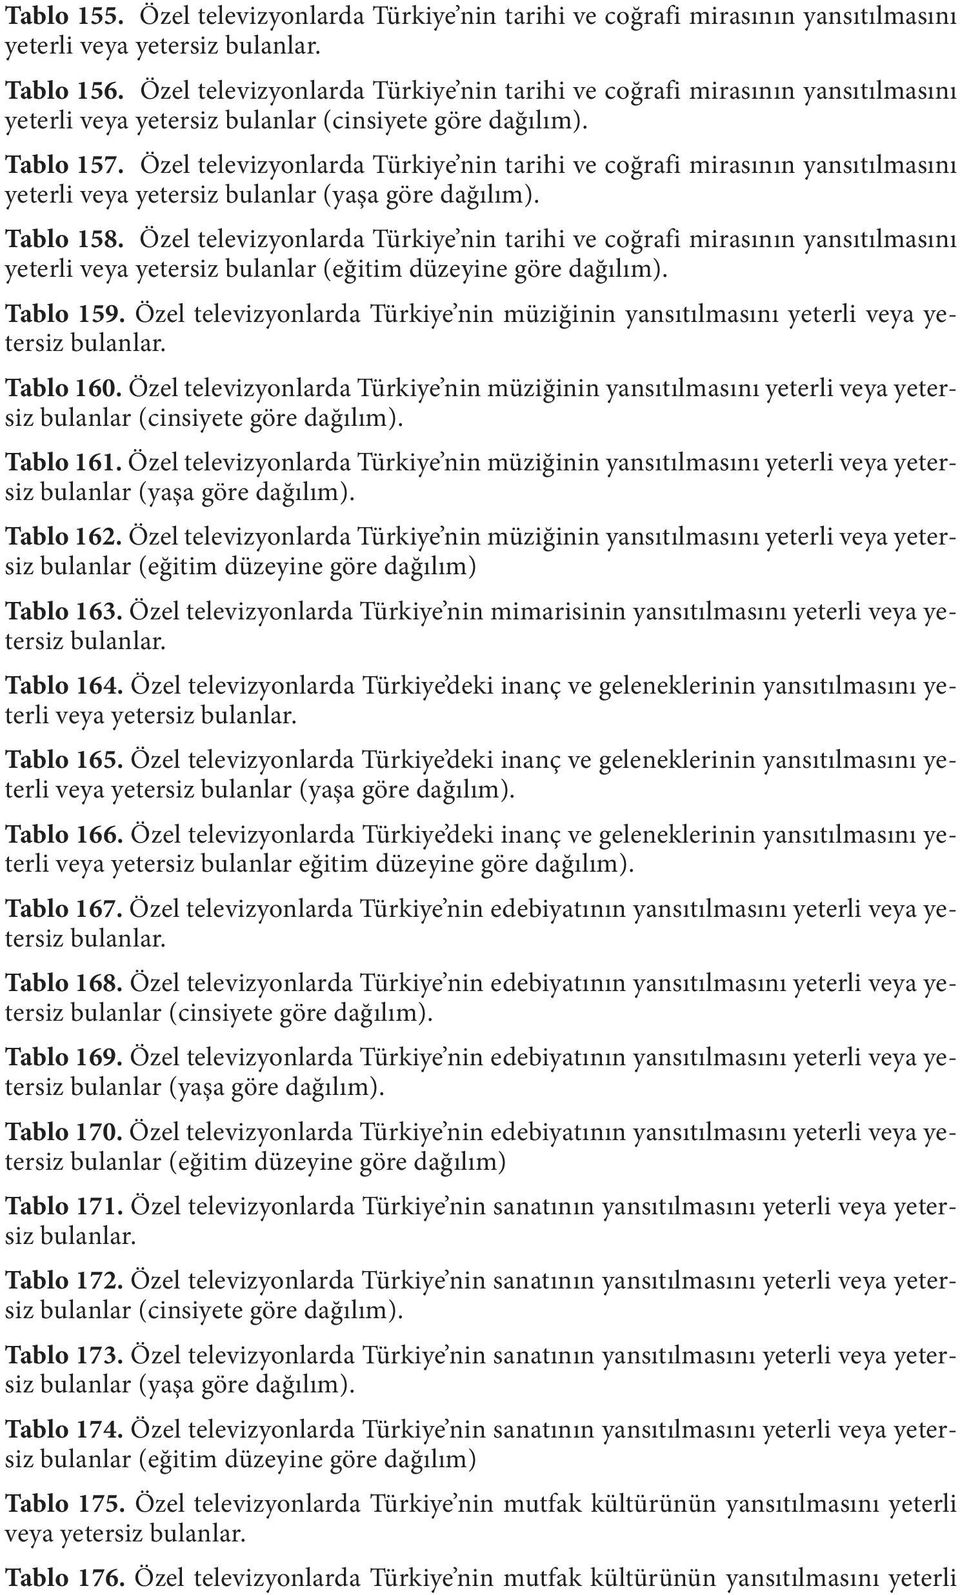 Özel televizyonlarda Türkiye nin tarihi ve coğrafi mirasının yansıtılmasını yeterli veya yetersiz bulanlar (yaşa göre dağılım). Tablo 158.